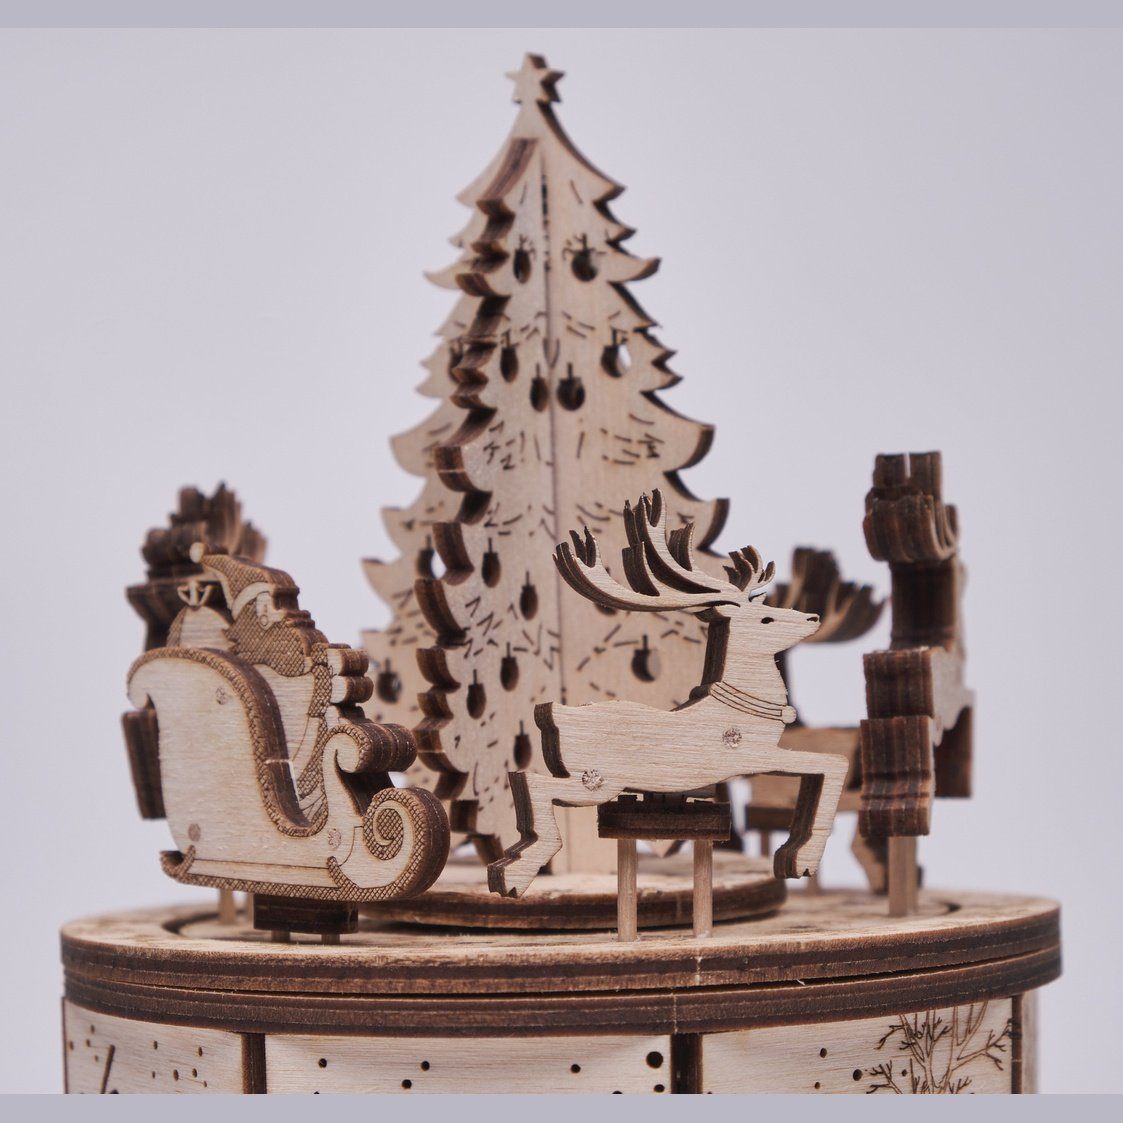 Wood Trick Santa’s Carousel Houten Modelbouw - Muziekdoos